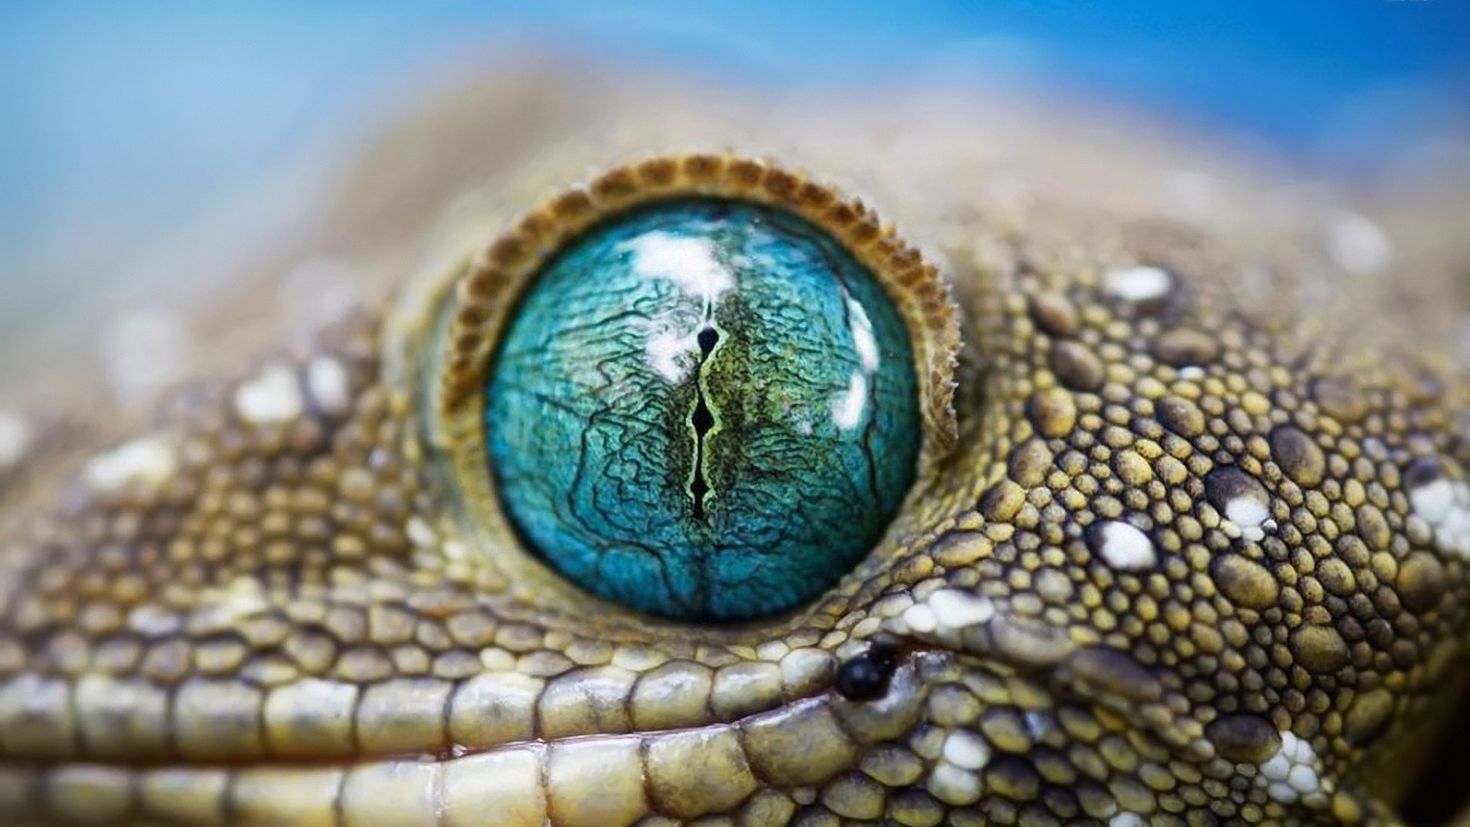 Век у ящерицы. Геккон Смита. Глаз рептилии. Змеиные глаза. Глаз крокодила.